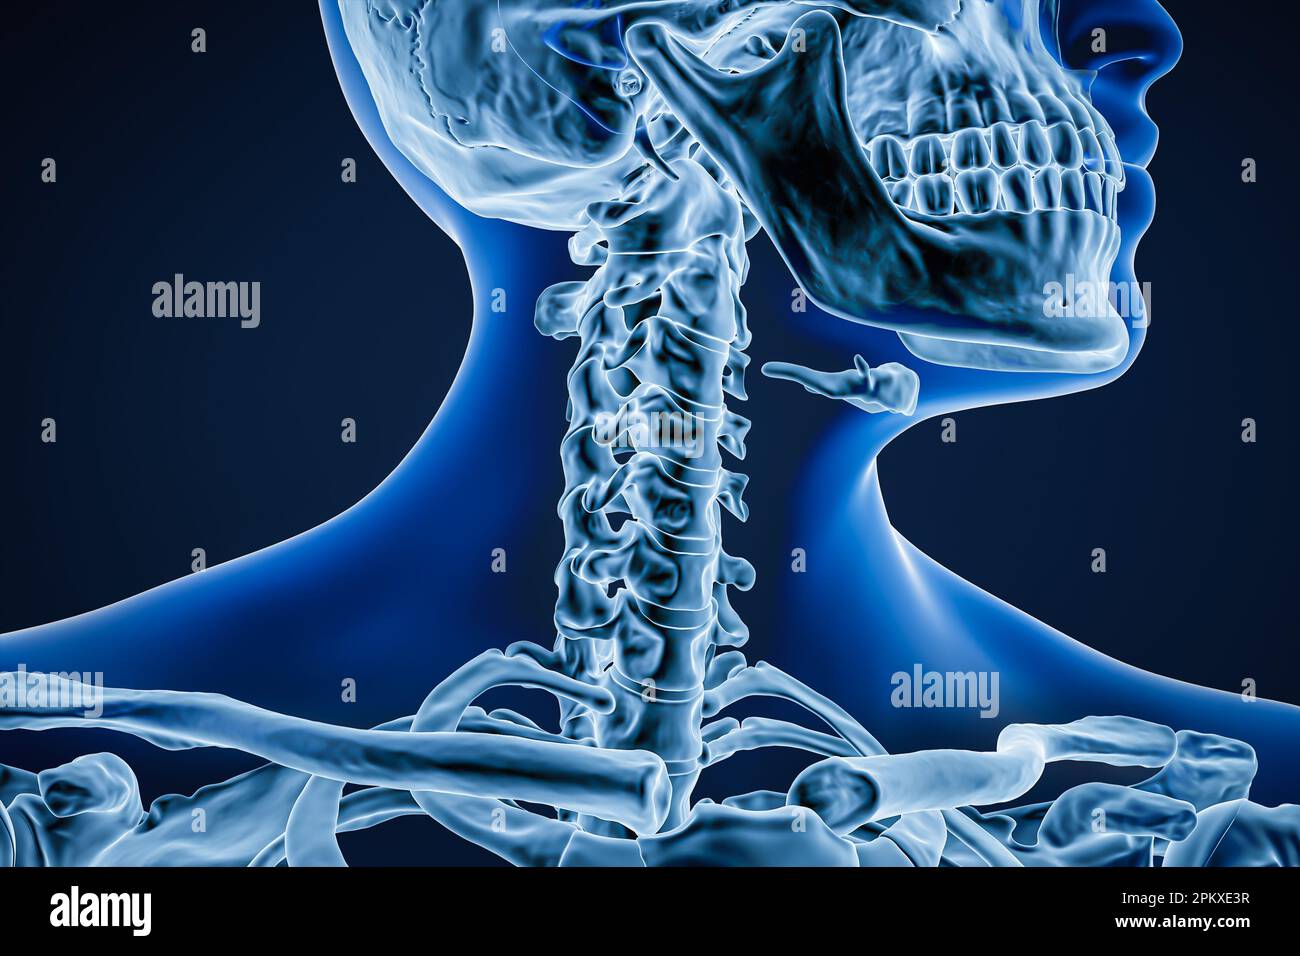 Anteriore oder Vorderansicht der Halswirbelknochen mit adulten männlichen Körperkonturen 3D-Darstellung. Menschliche Skelettanatomie, Osteologie, Wissenschaft Stockfoto